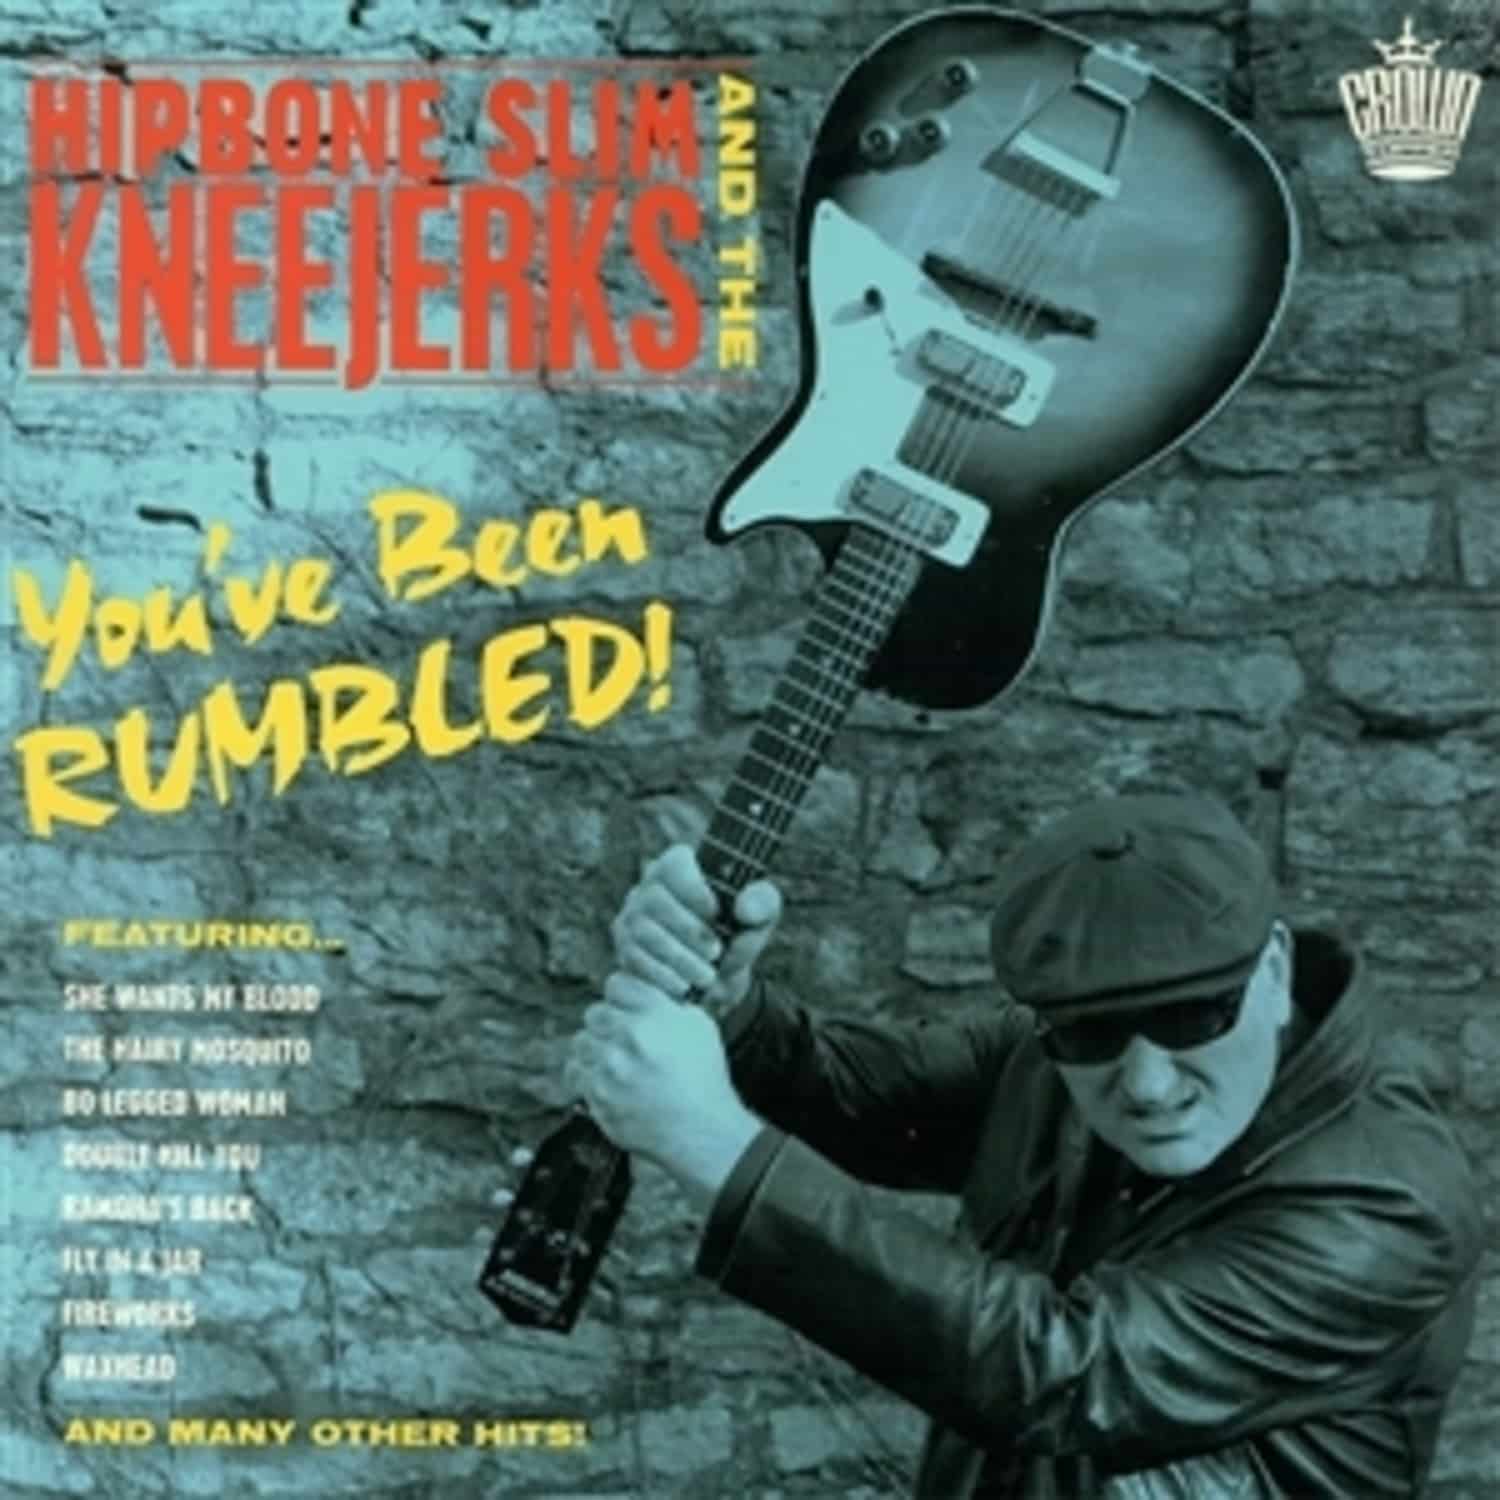 Hipbone Slim & The Kneejerks - YOU VE BEEN RUMBLED 